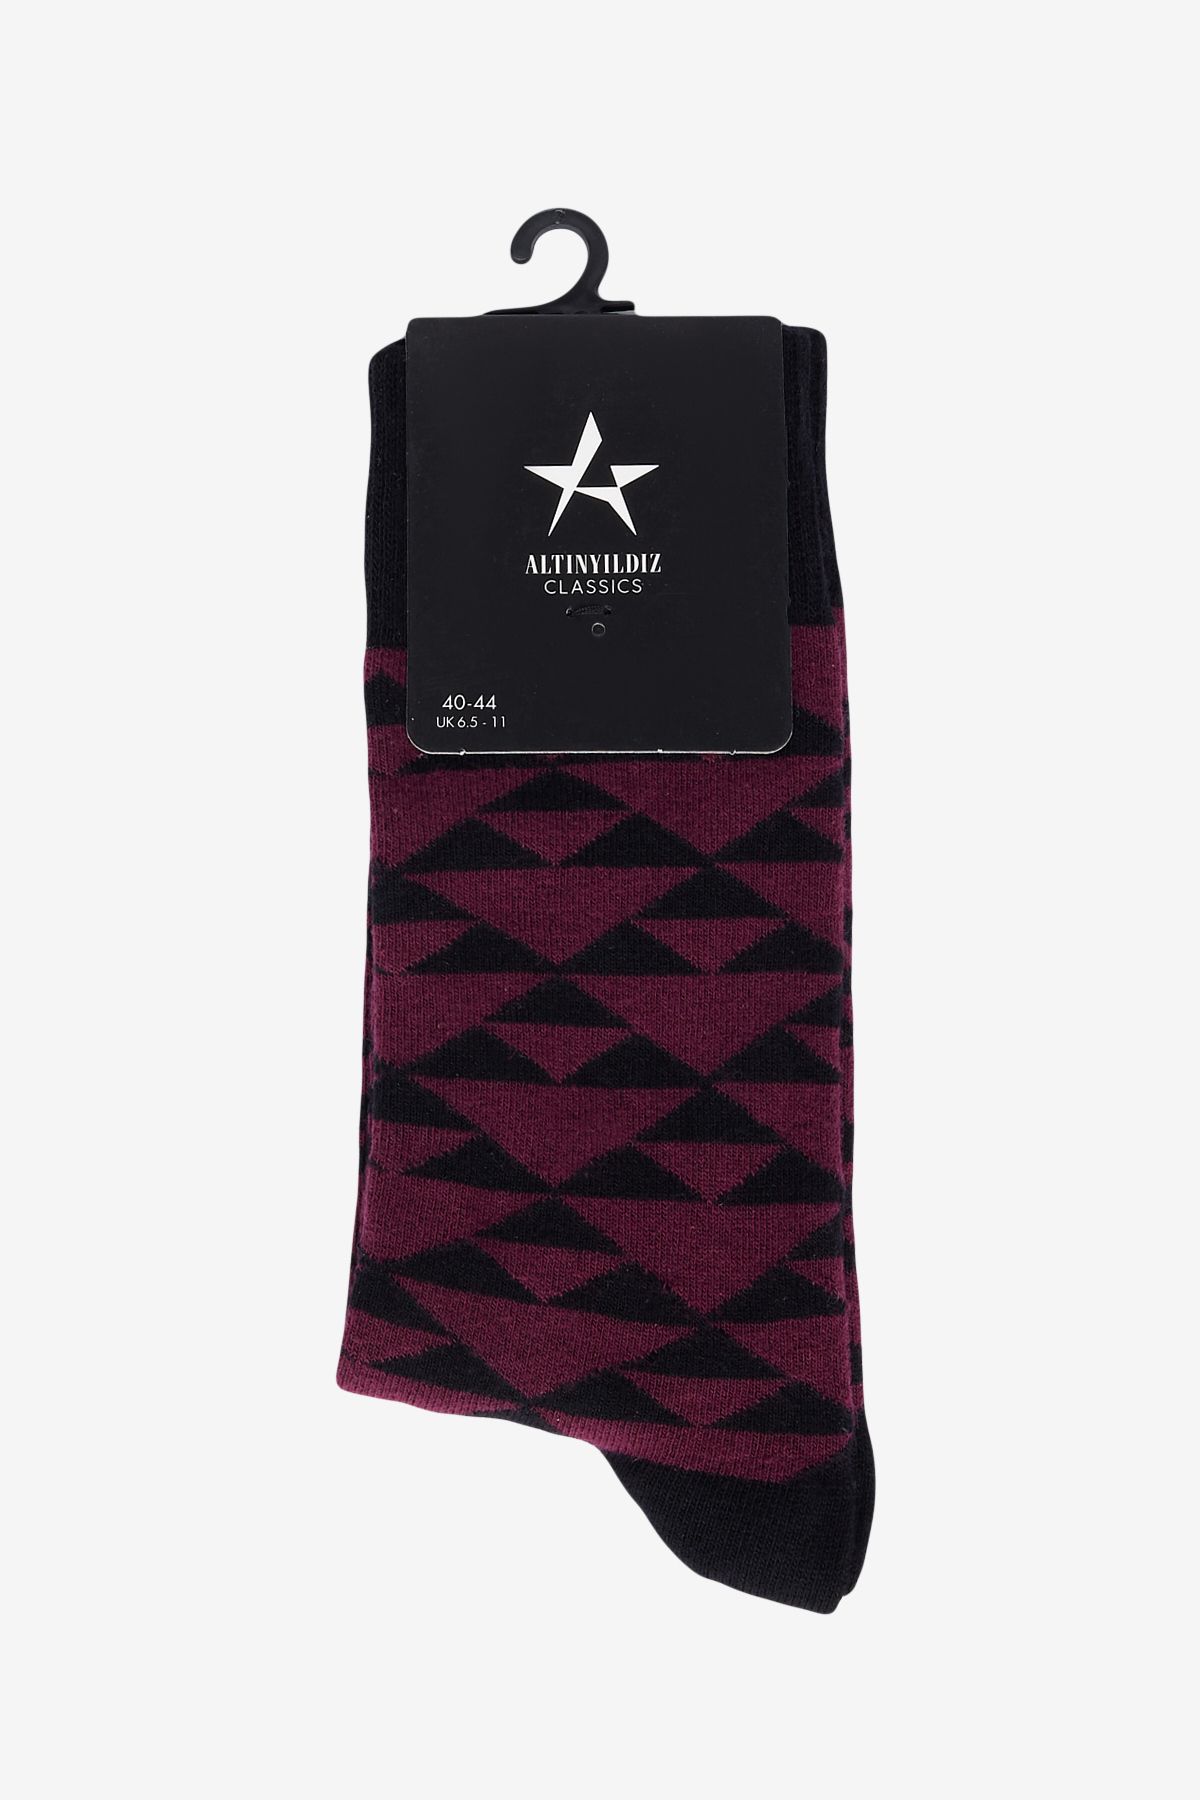 Altınyıldız Classics Erkek Bordo-siyah Desenli Soket Çorap